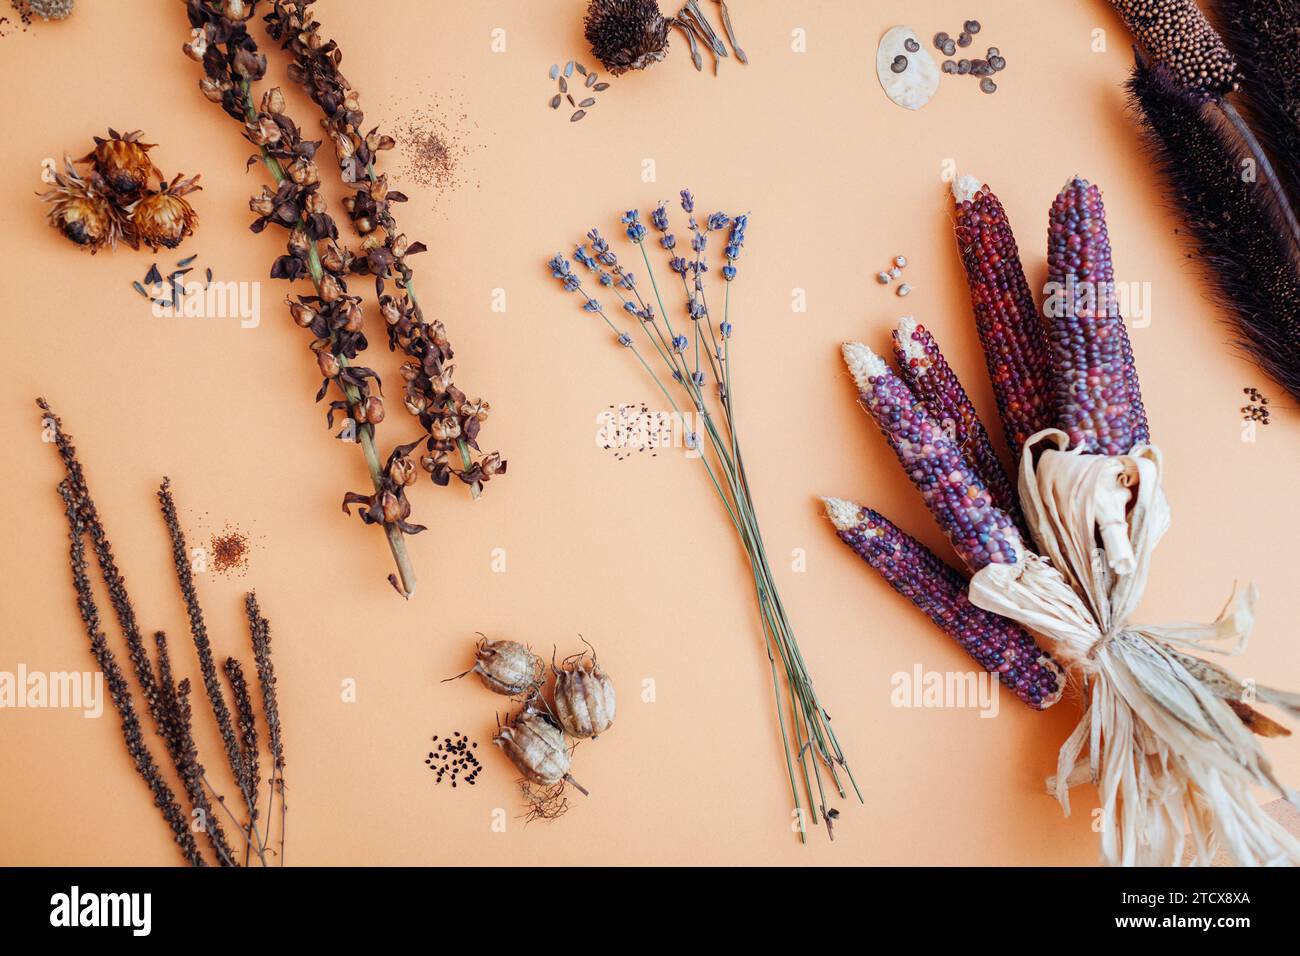 Blumensamen-Mix aus dem Garten. Die Sammlung trockener Samenkörner von Fuchshandschuh veronica lavendelornamentaler Purpurmais Dahlia nigella. Draufsicht. Flache Lagen Stockfoto